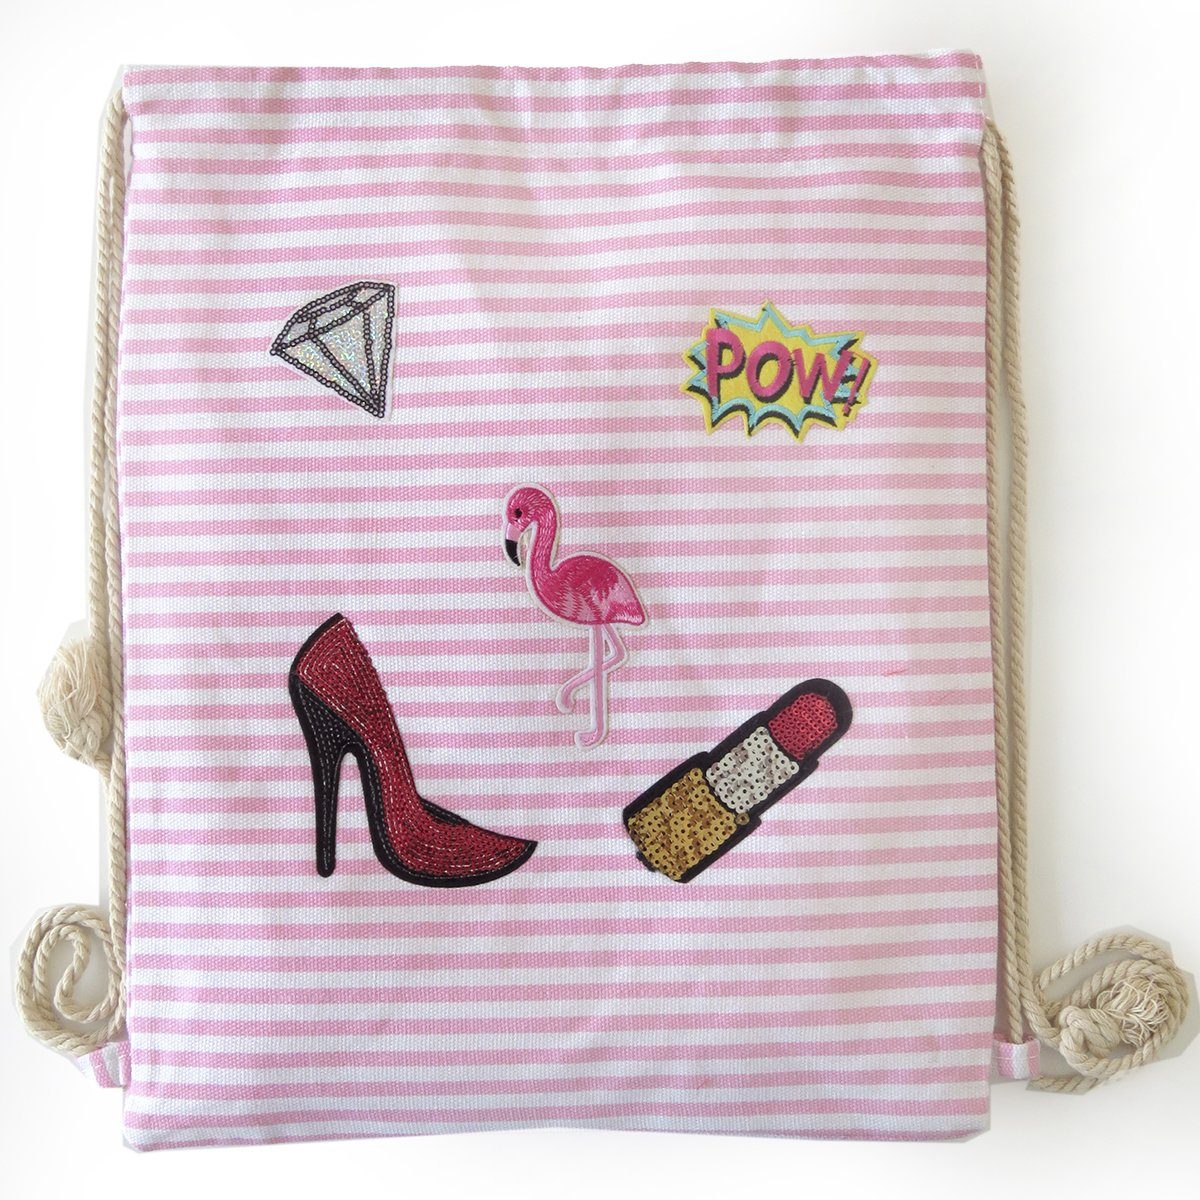 Sonia Originelli abweichen Aufnäher Farben Flamingo Gymbag rosa Umhängetasche gestreift Turnbeutel Patches können Baumwolle,